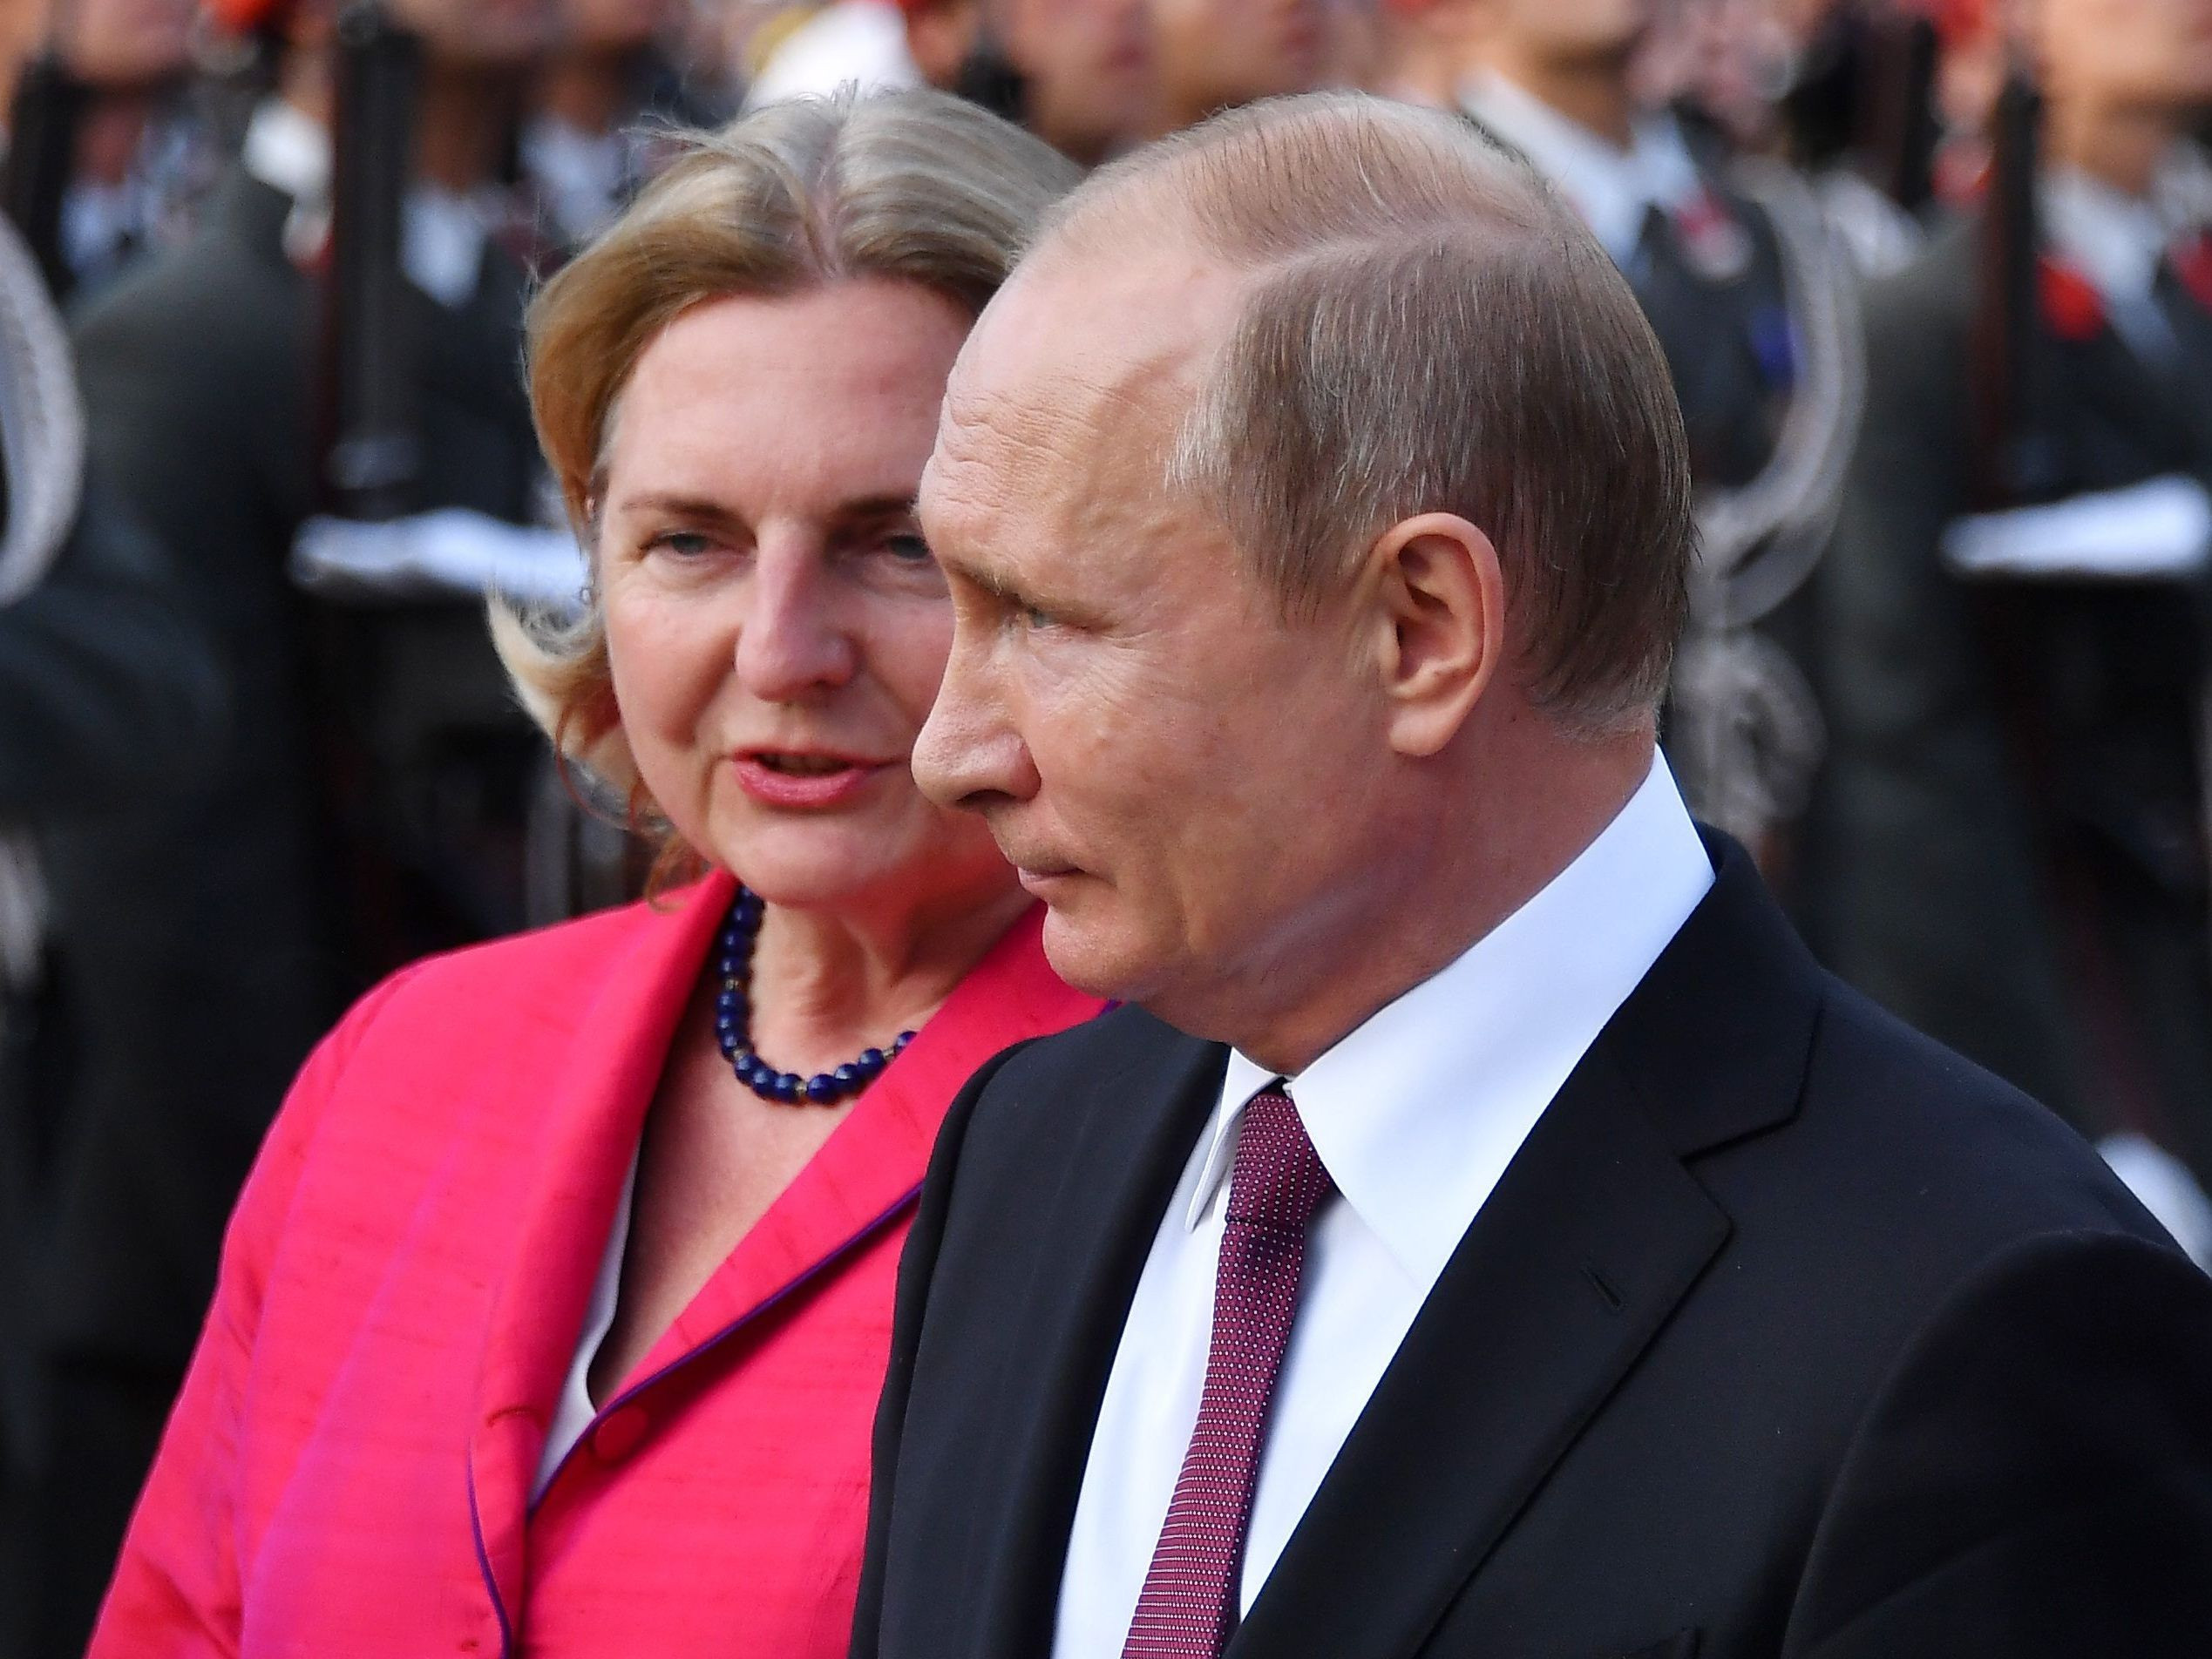 Wer Zahlt Die Hochzeit
 Putin zu Gast bei Kneissl Hochzeit Wer zahlt